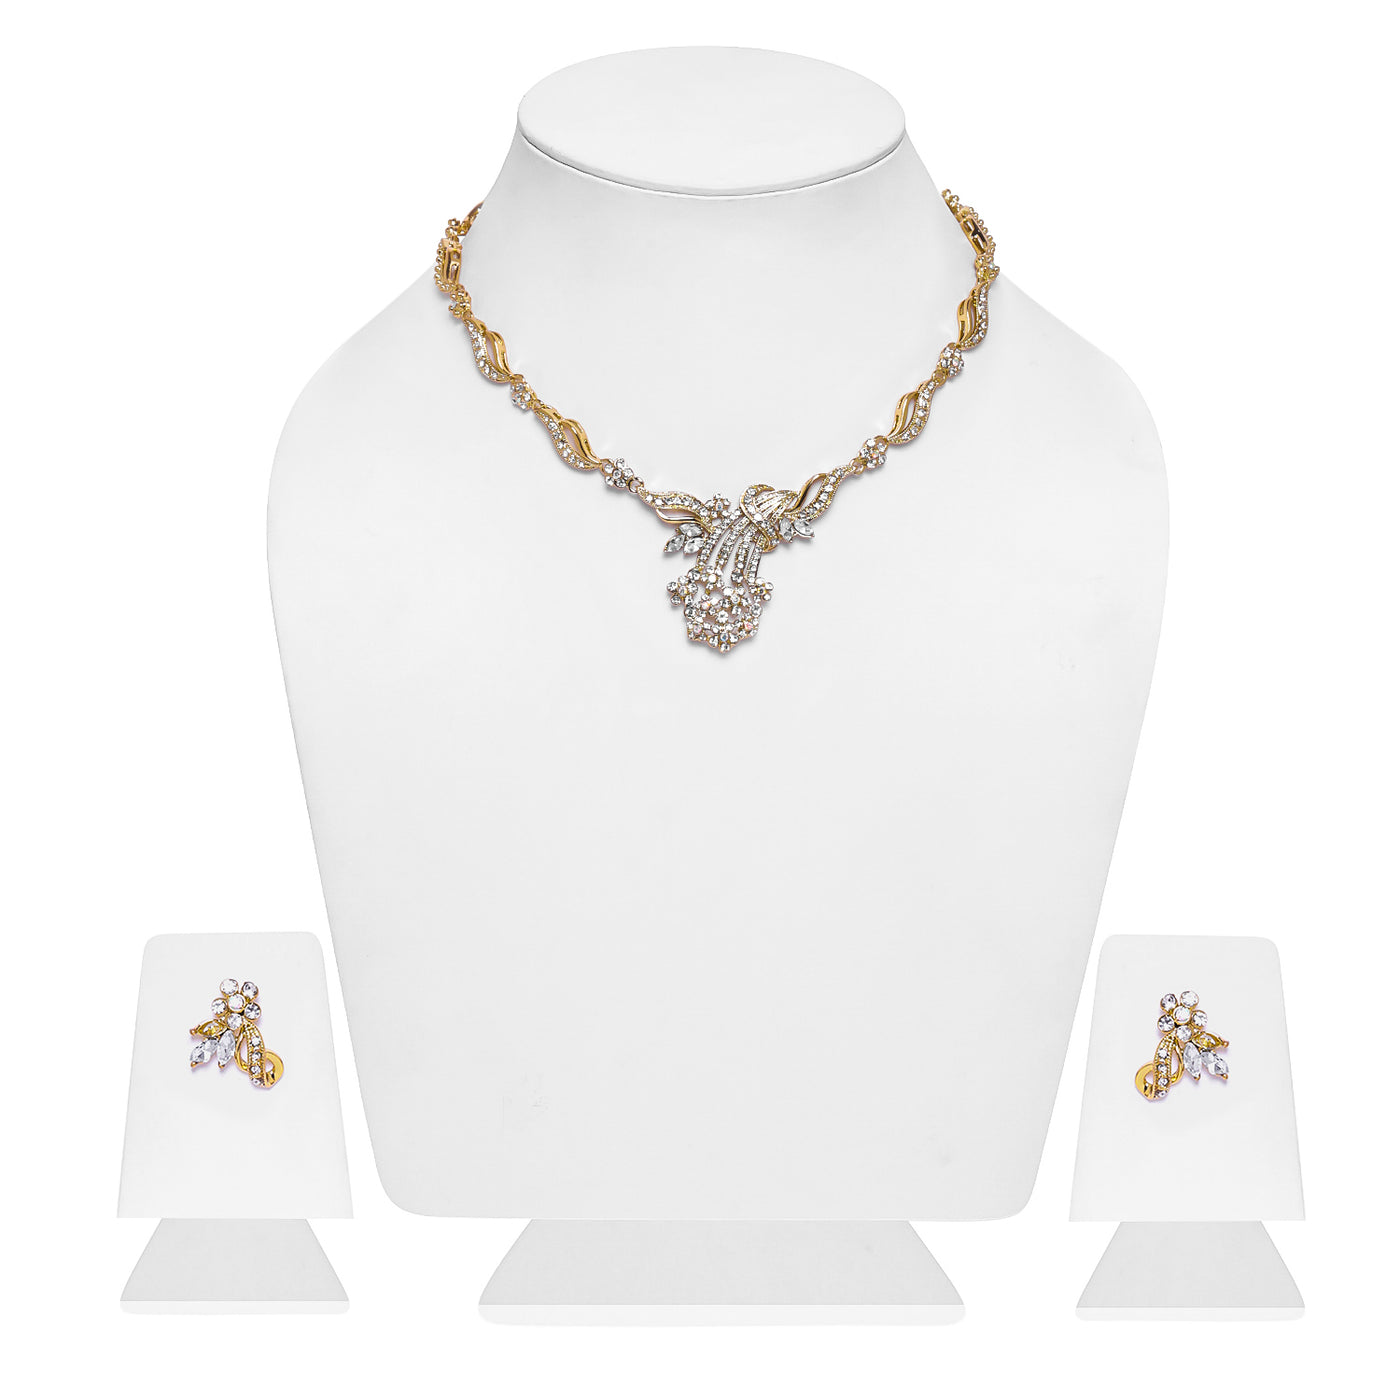 Estele 24 Kt Gold Plated Flower leaf Necklace Set with Austrian Crystals